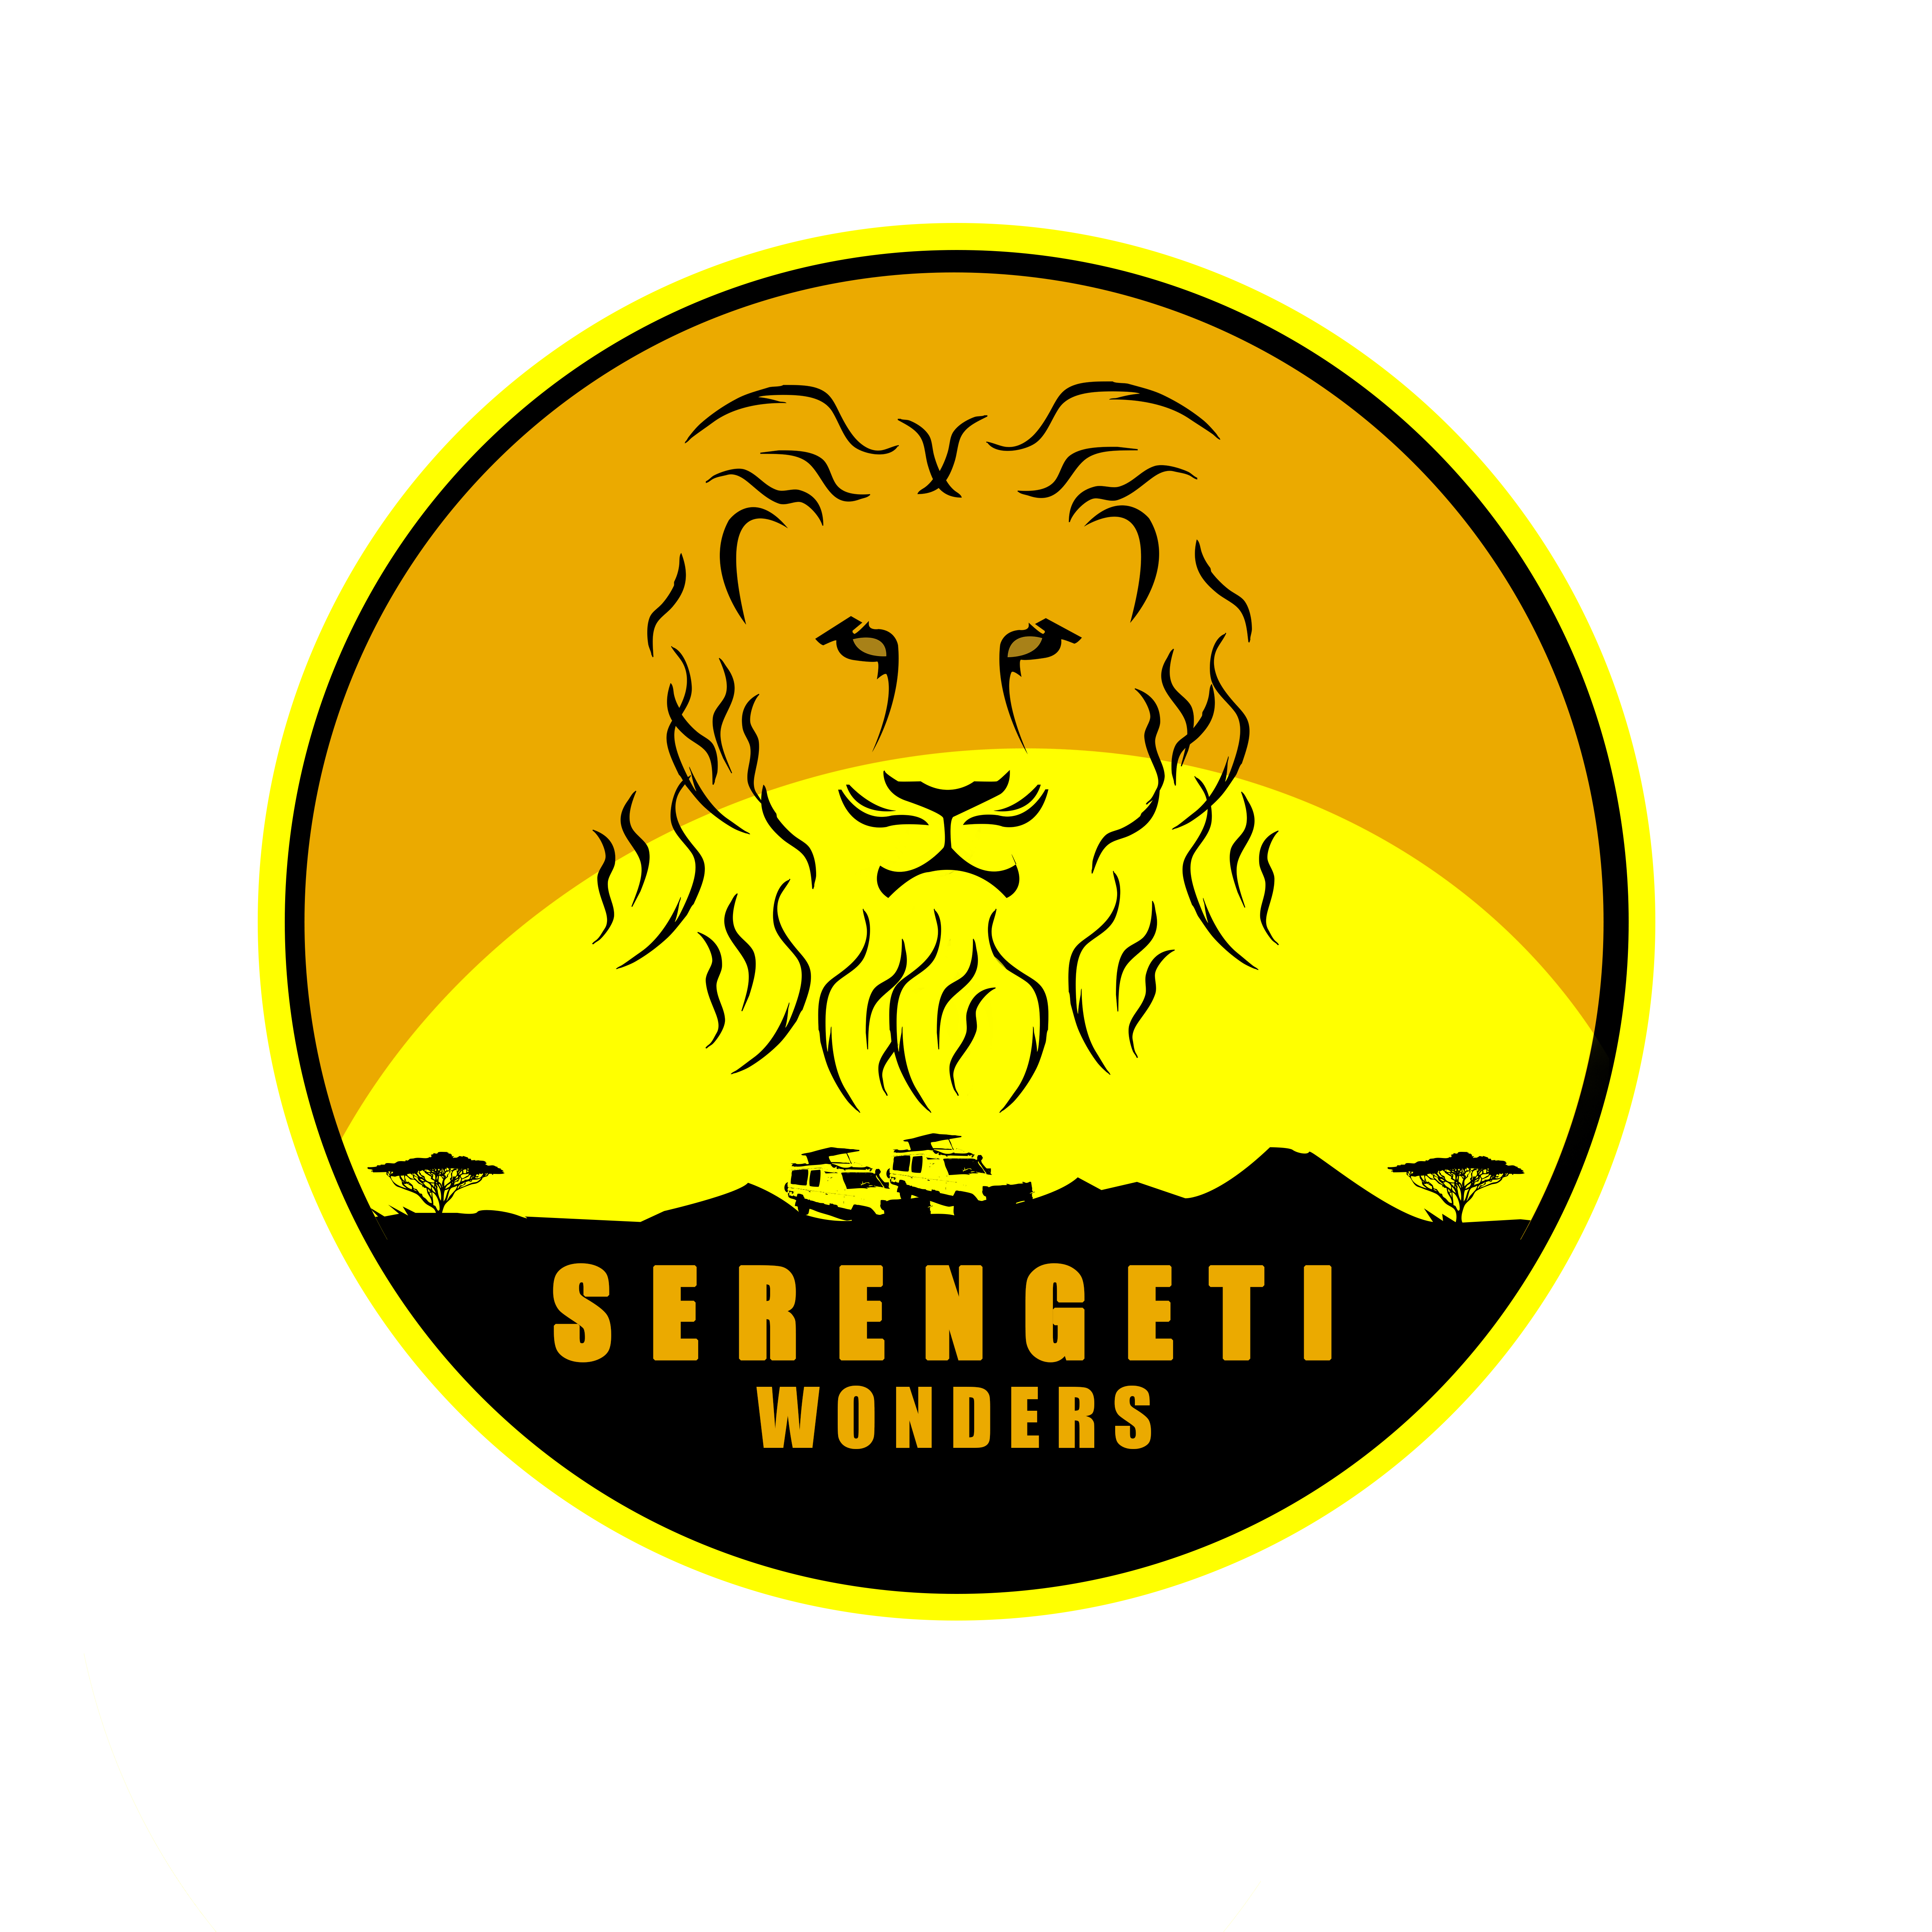 Serengeti Wonders Limited